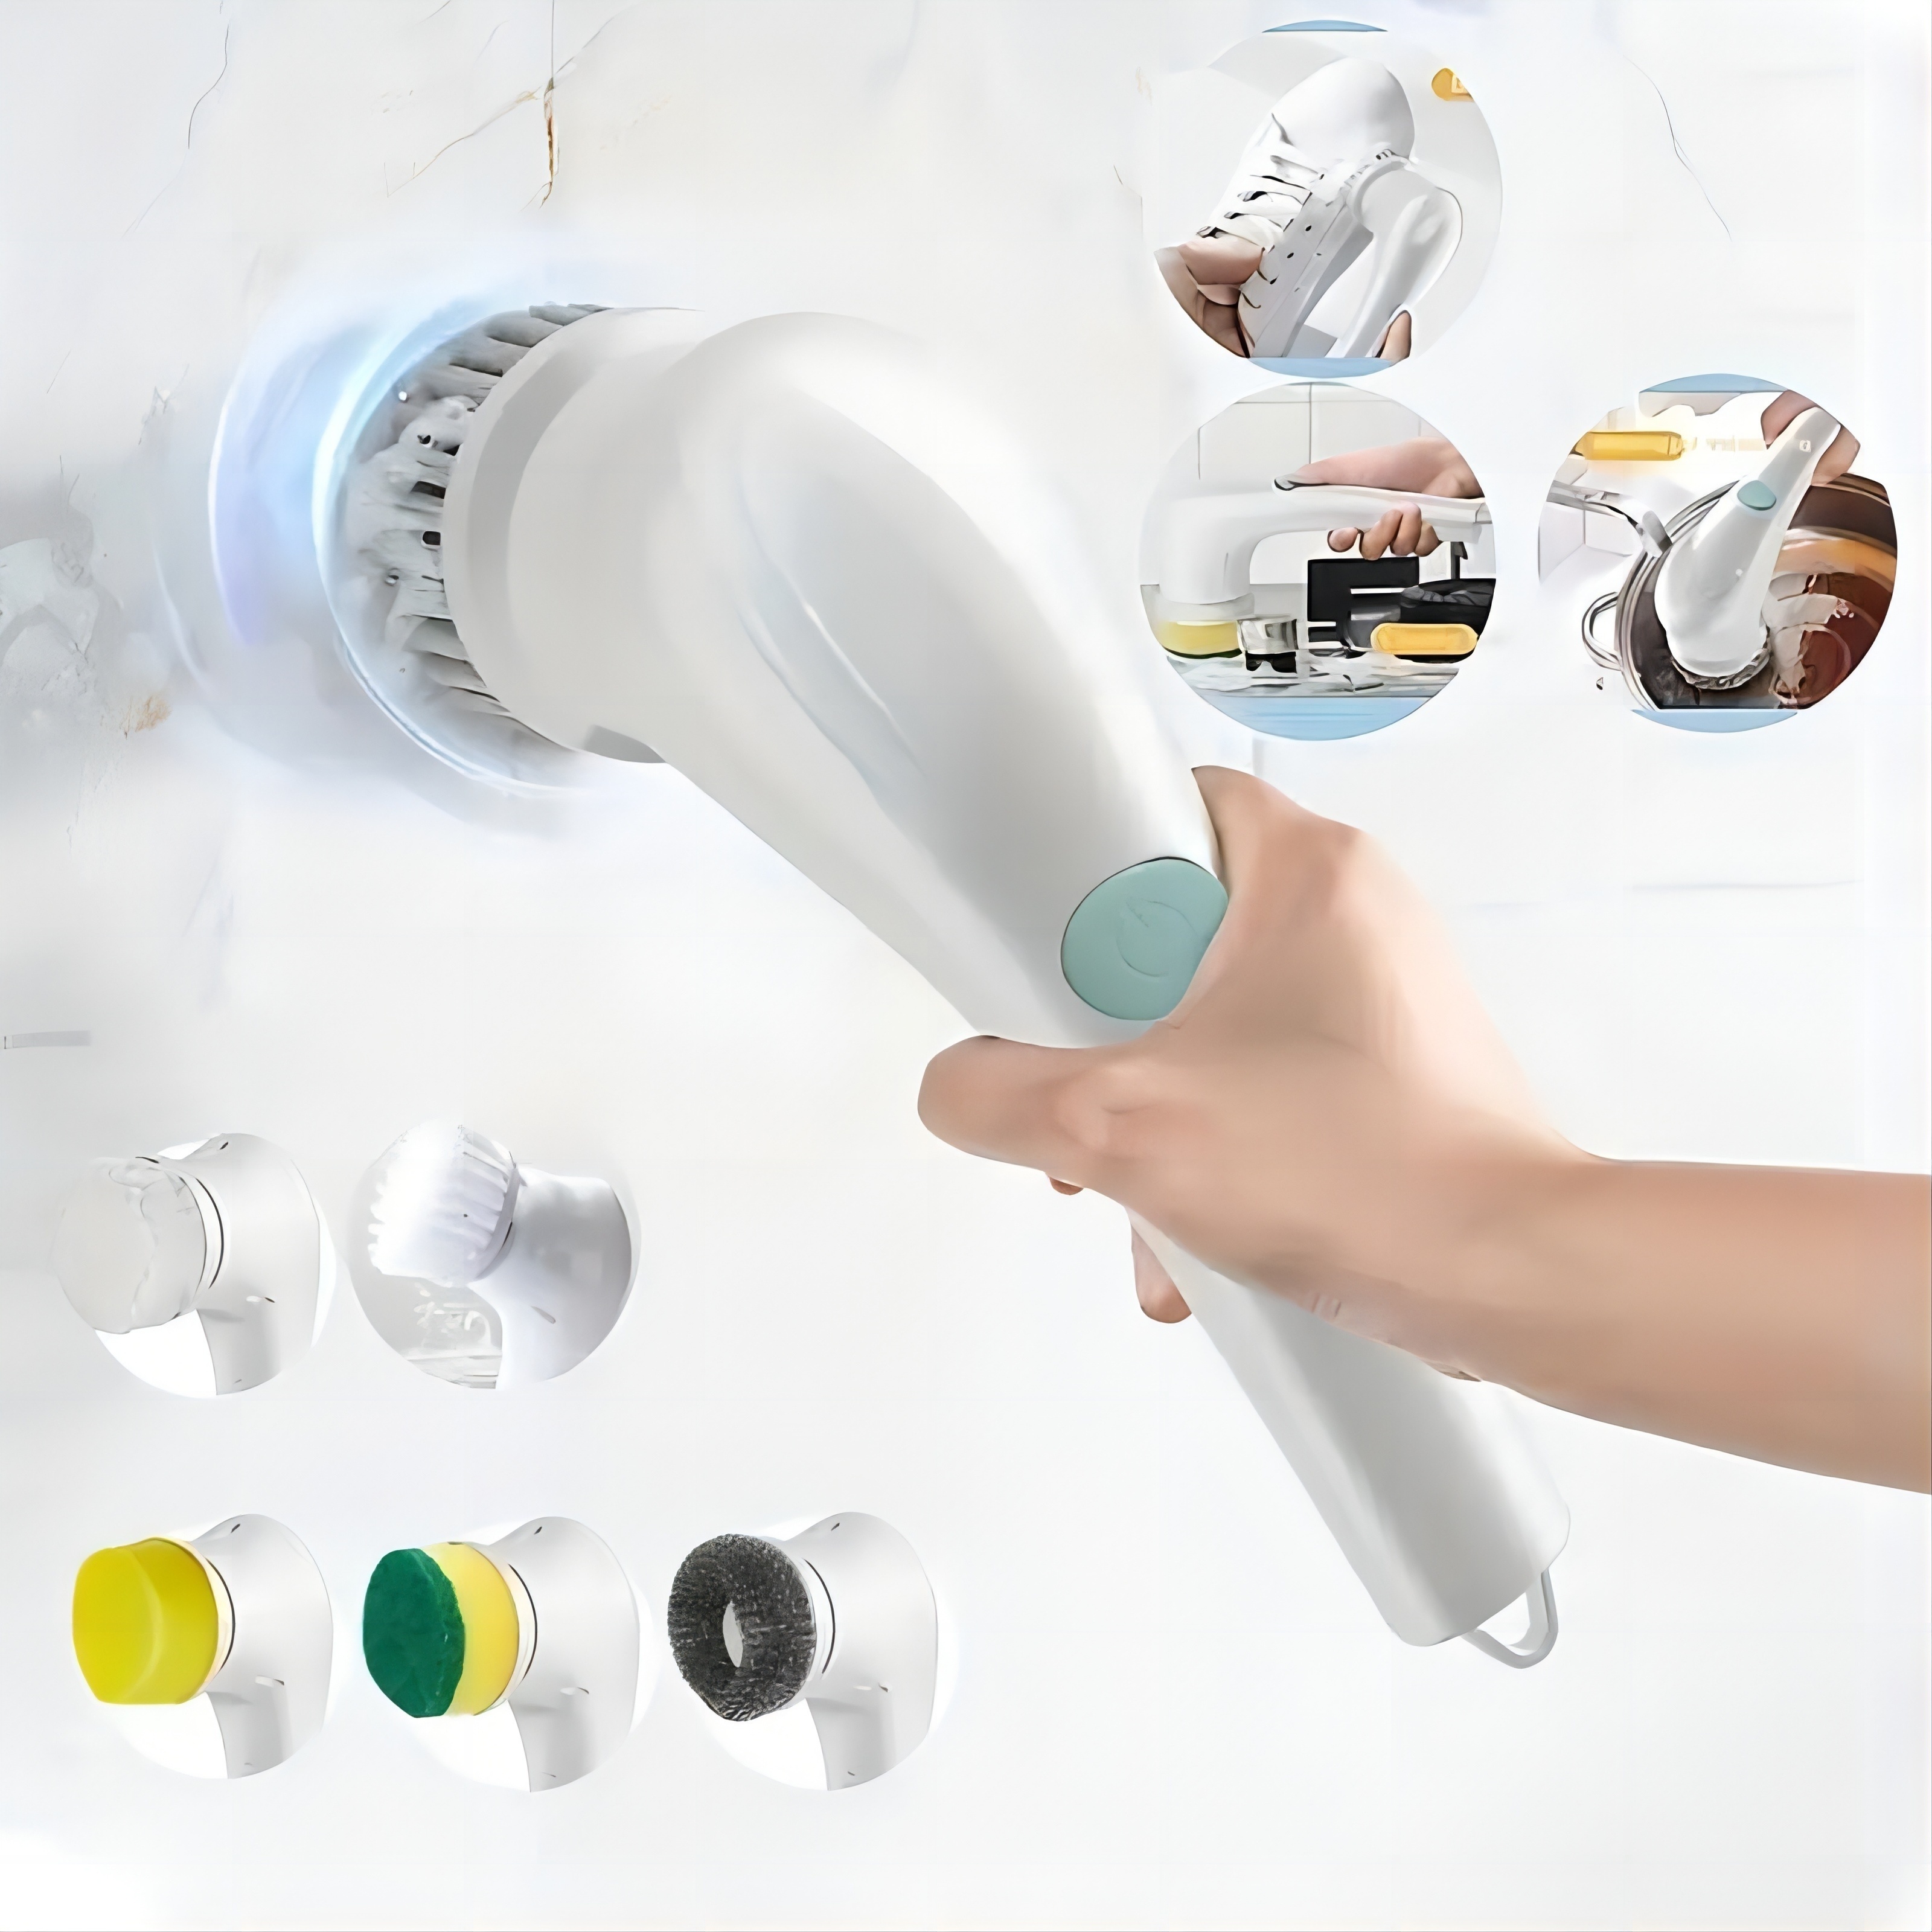 Cepillo limpiador eléctrico giratorio: limpiador de ducha inalámbrico 360  grados con 3 cabezales de cepillo de limpieza reemplazables multiusos y 1